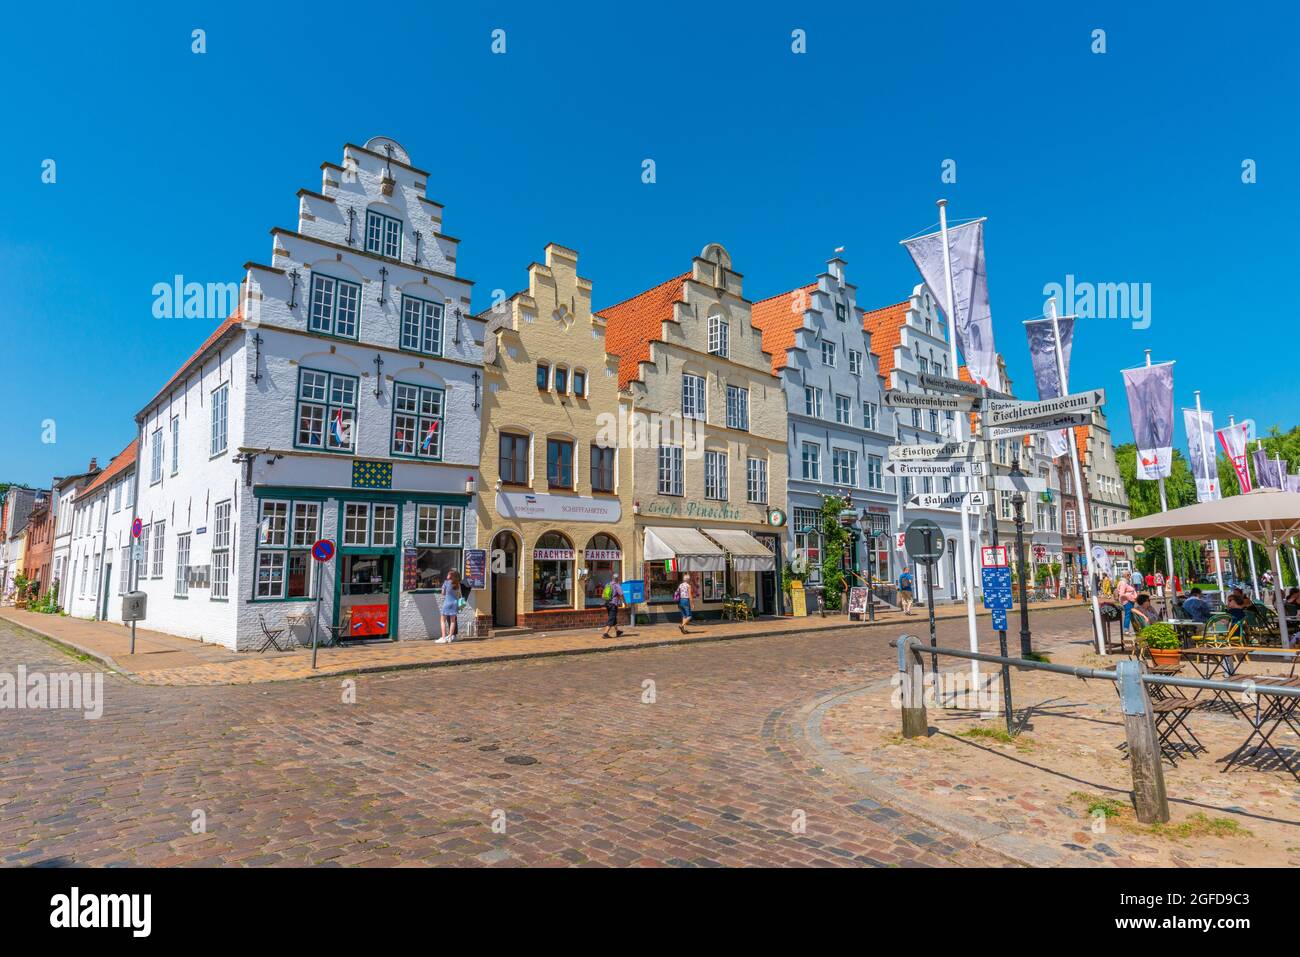 Ensemble von Häusern mit Stufengiebeln am Marktplatz, Friedrichstadt, Nordfriesland, Schleswig-Holstein, Norddeutschland Stockfoto